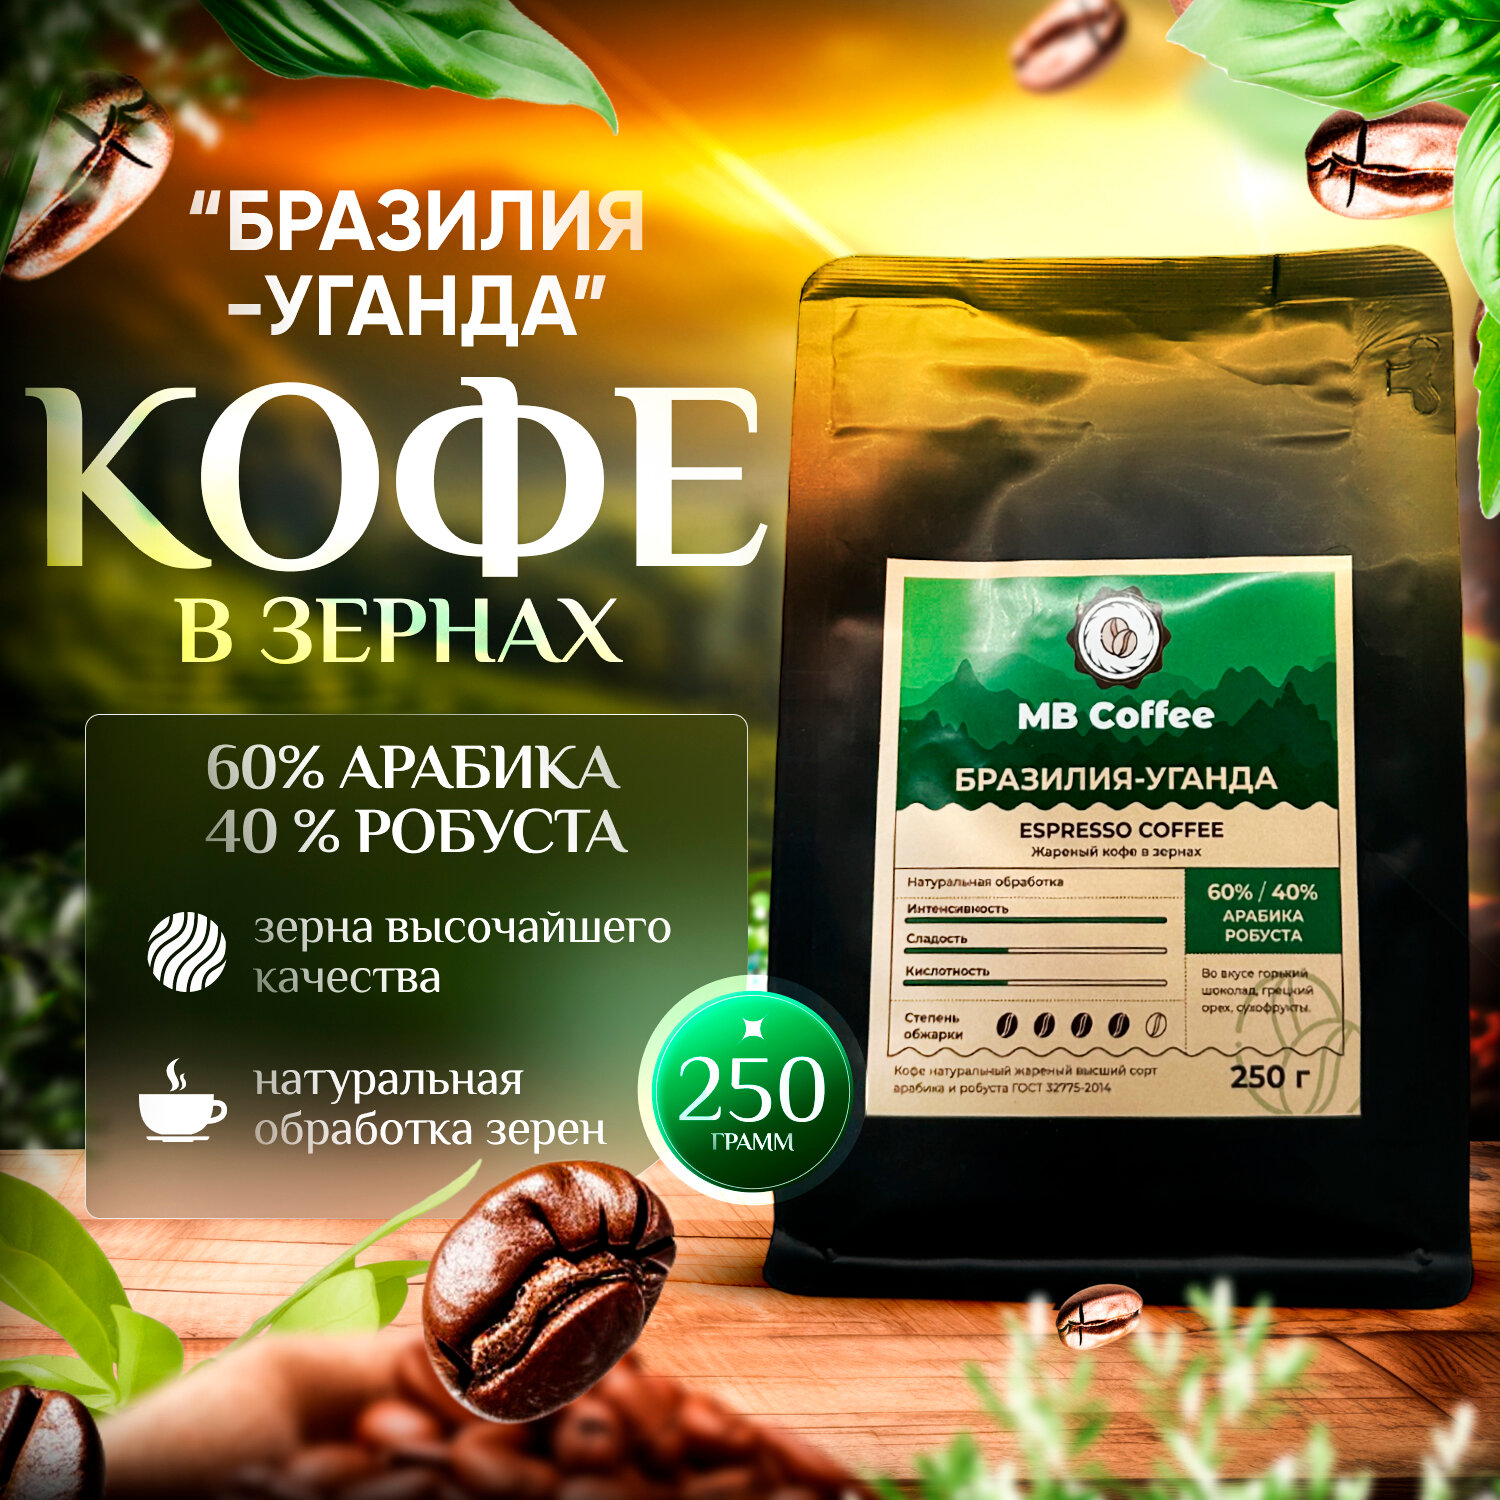 MB Coffee "Бразилия-Уганда" кофе в зернах 250гр.